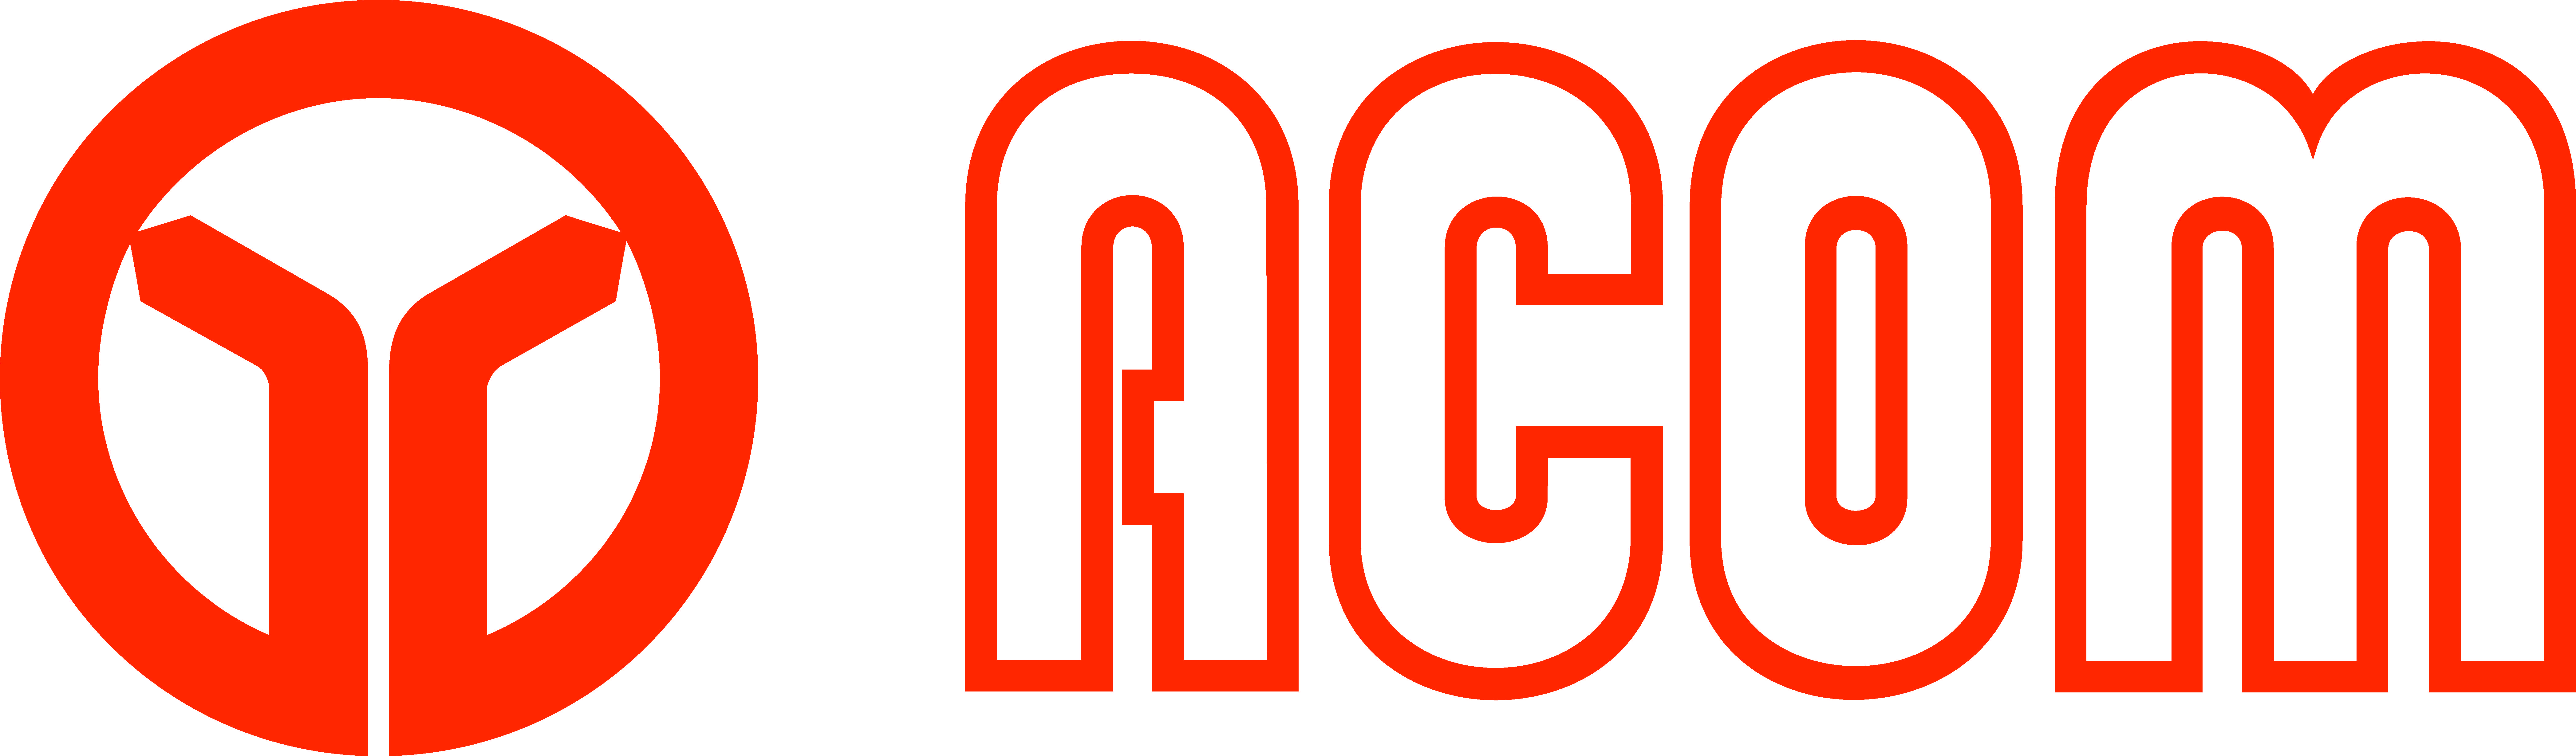 Acom Logo - Acom Logo